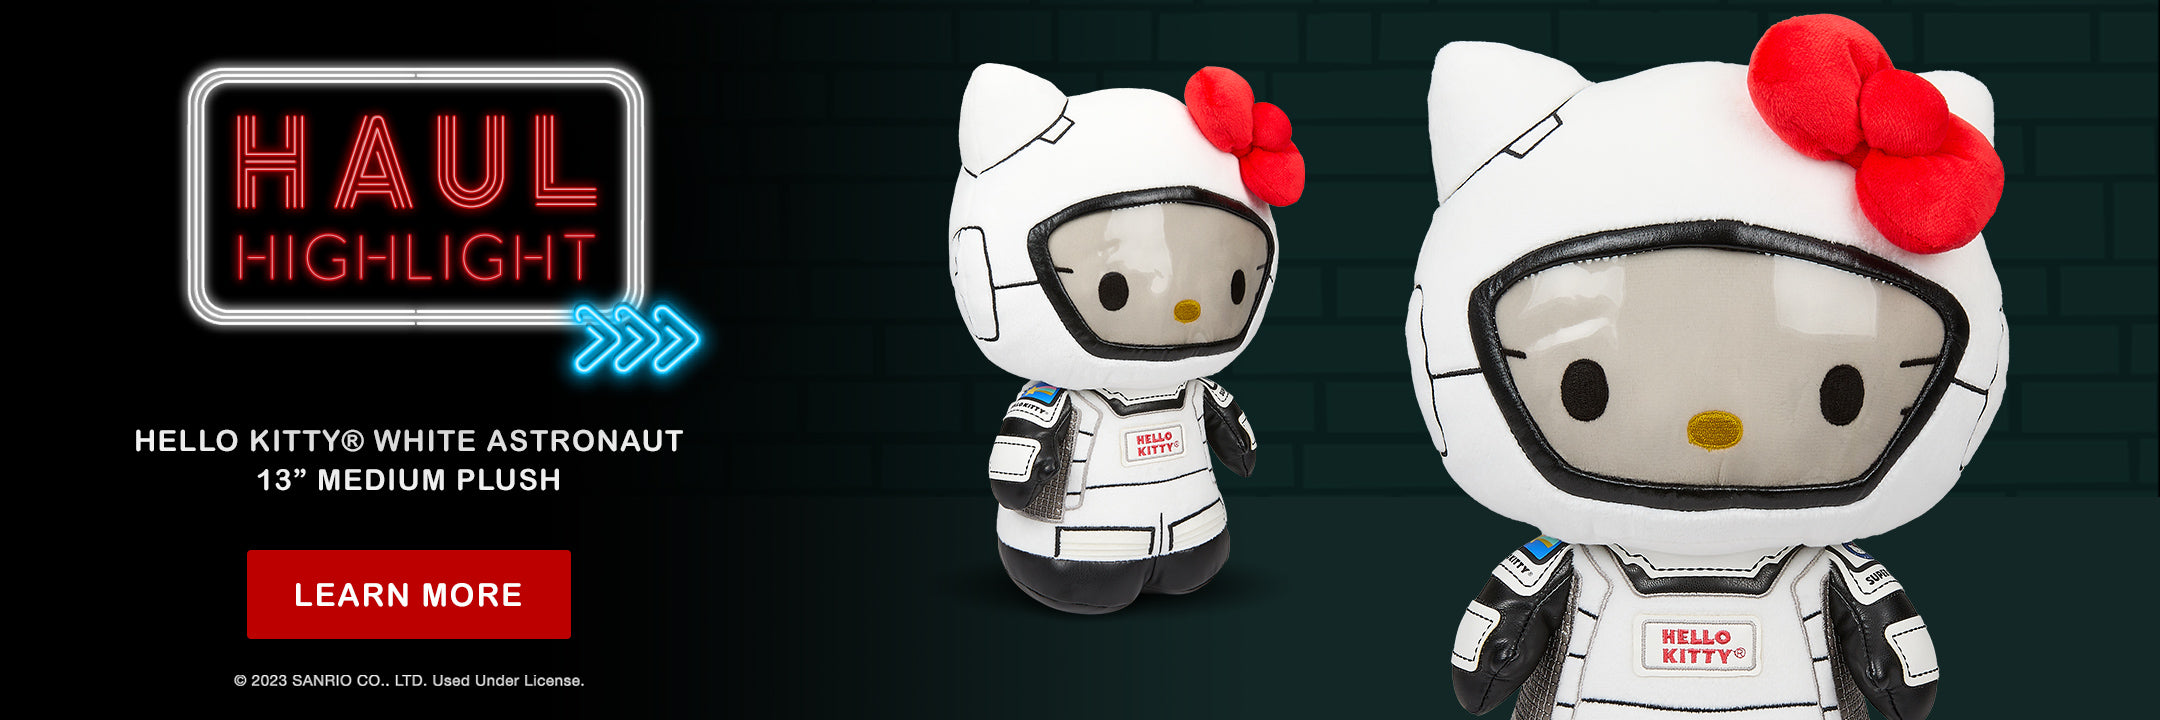 Haulathon Week 1 Drop - Sanrio - Hello Kitty White Astronaut 13" Plush from Kidrobot